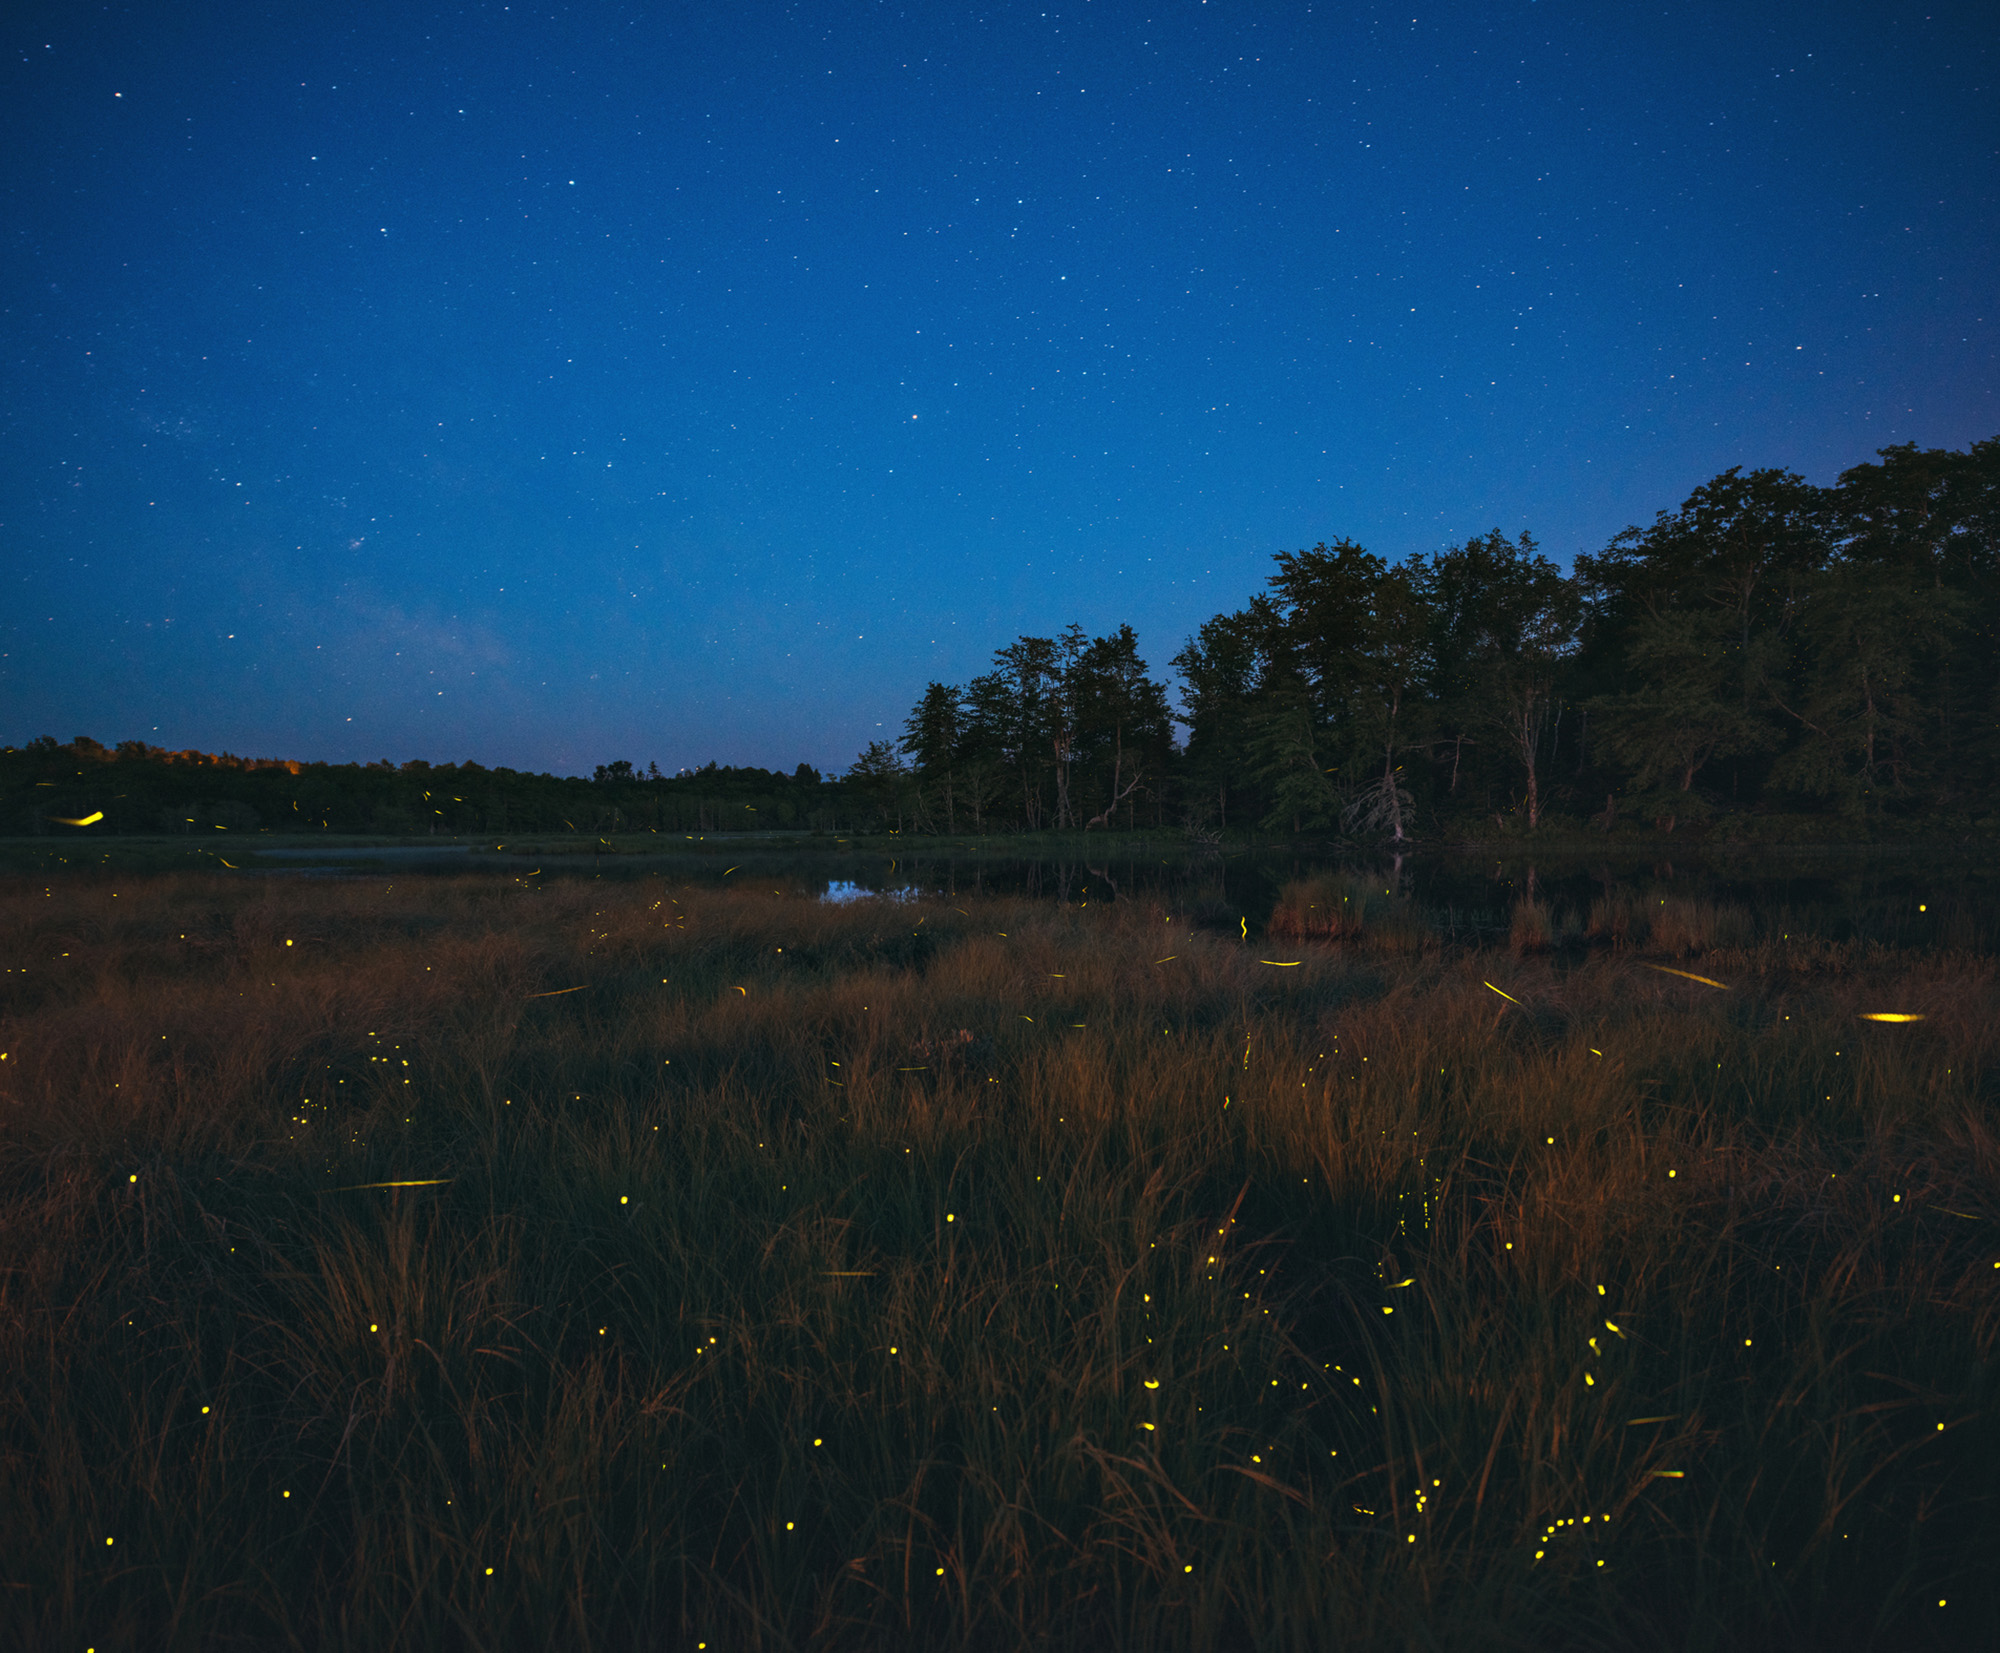 Hundreds of fireflies light up a dark field along a body of water